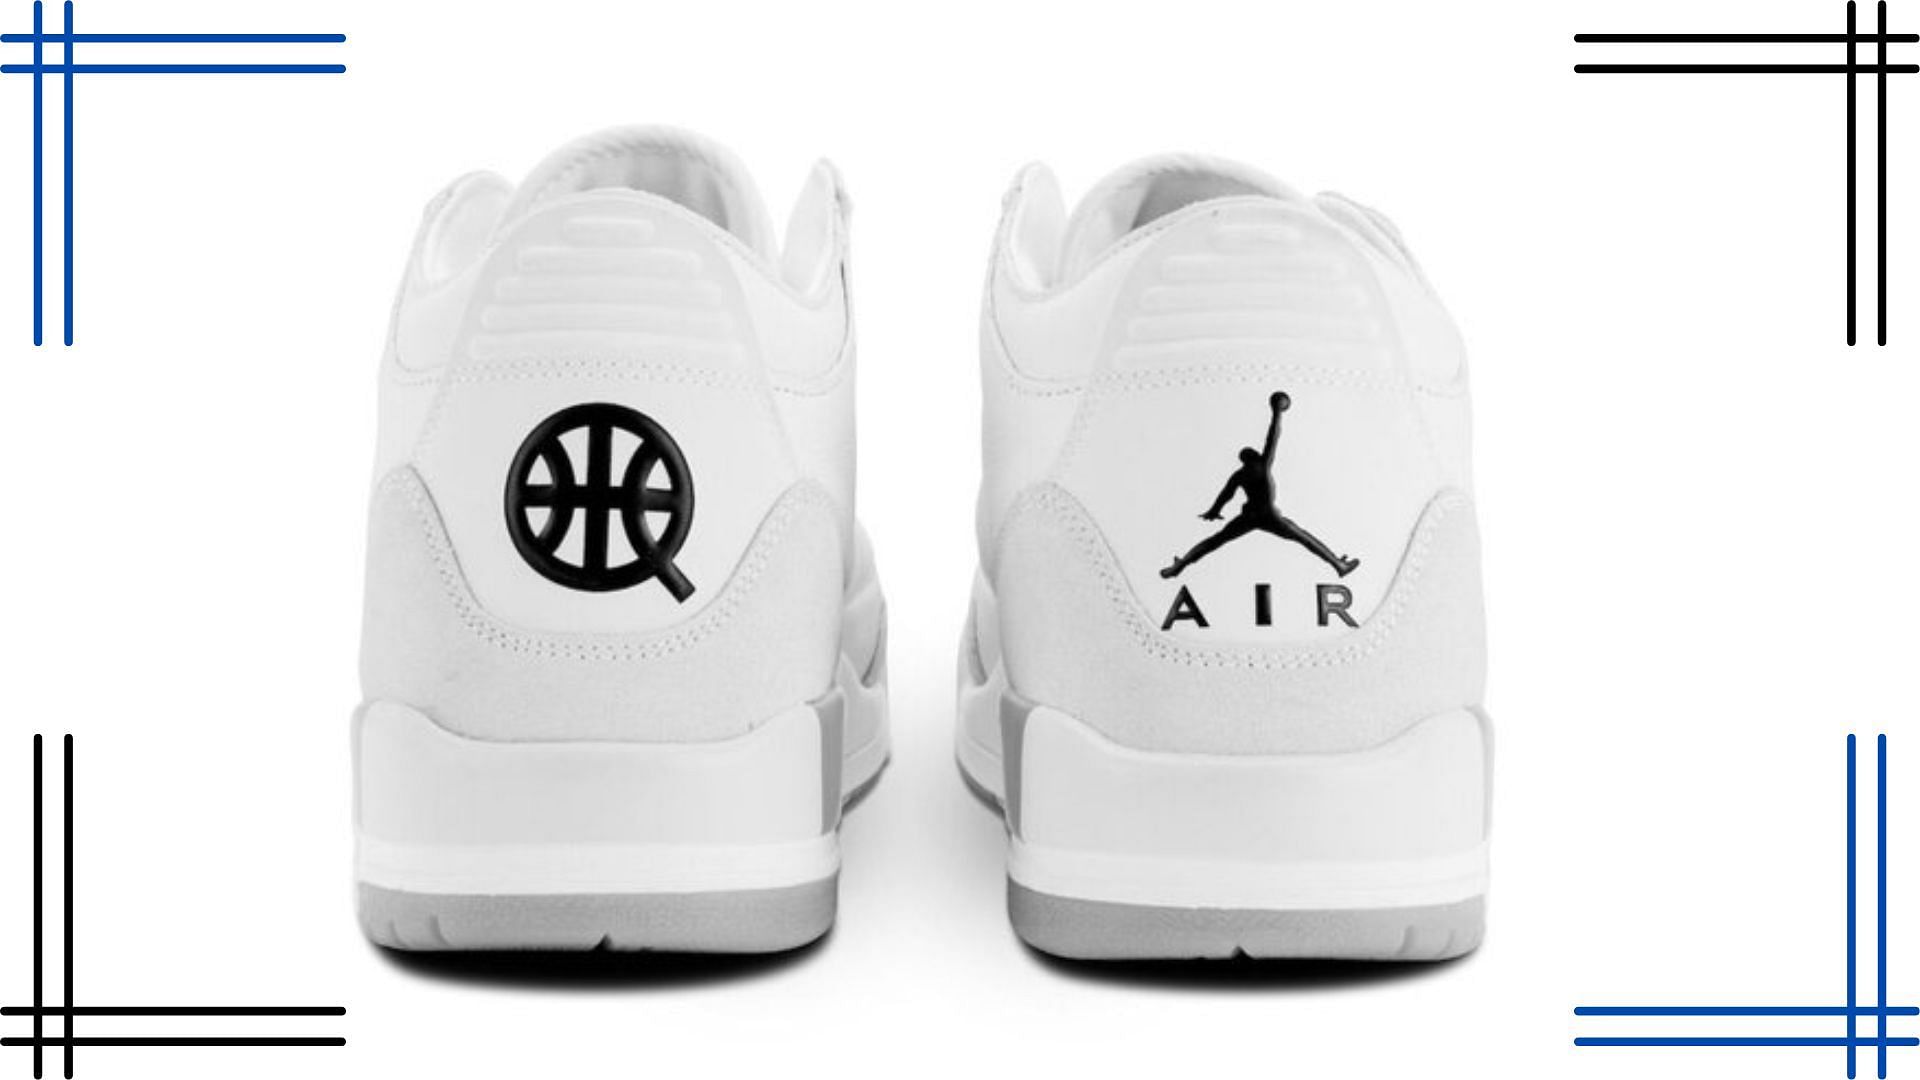 Air Jordan 3 Quai 54 shoes (Image via Twitter/@footweargalore)